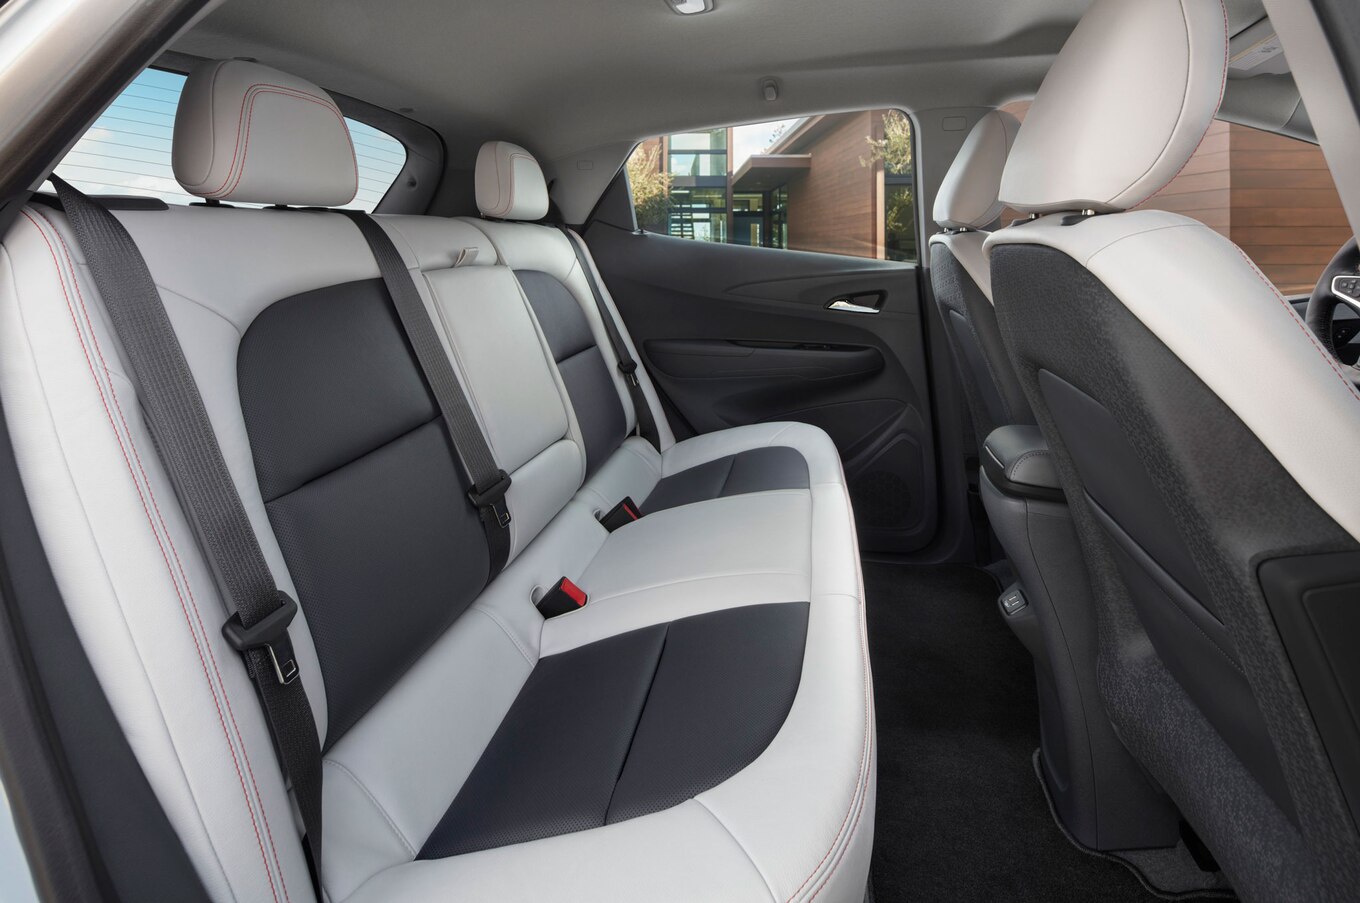 2017-Chevrolet-Bolt-EV-interior-rear-seats.jpg